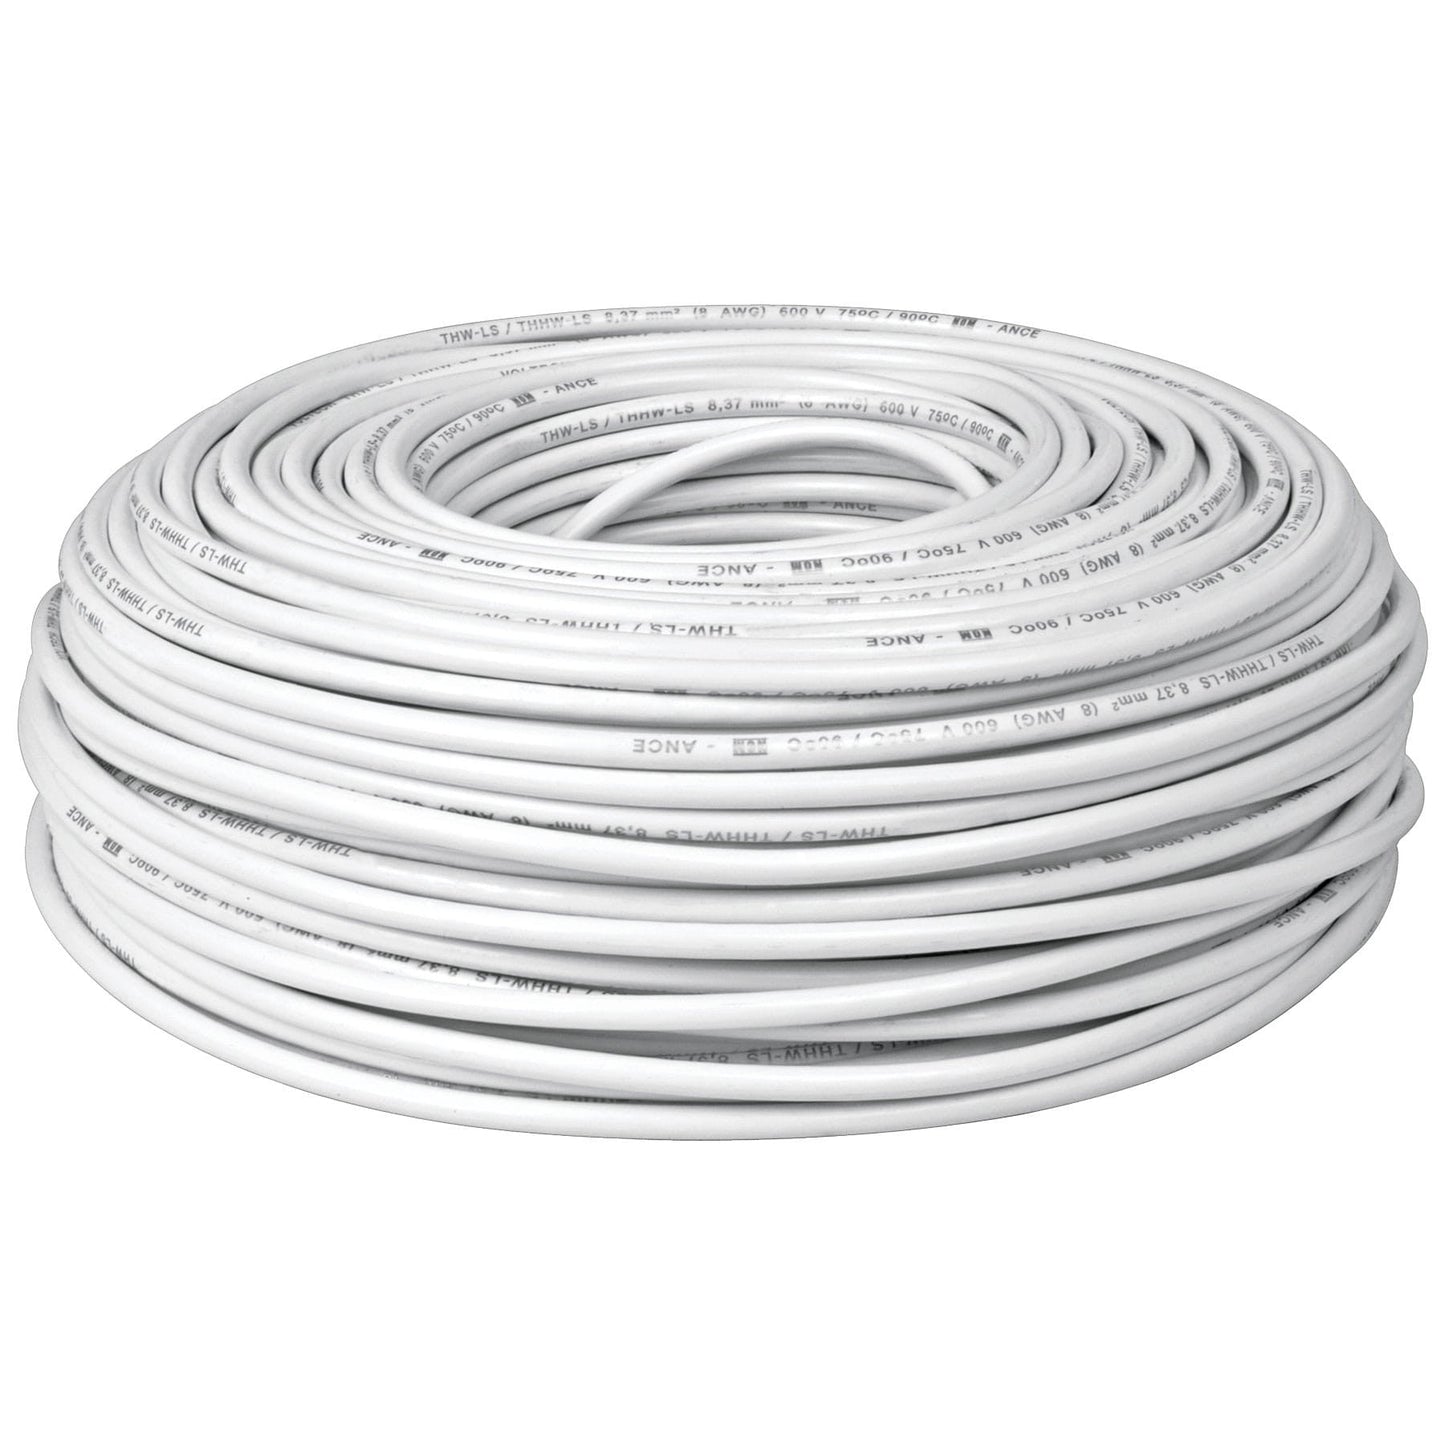 Copia de Cable THHW-LS, 12 AWG, color blanco rollo 100 m